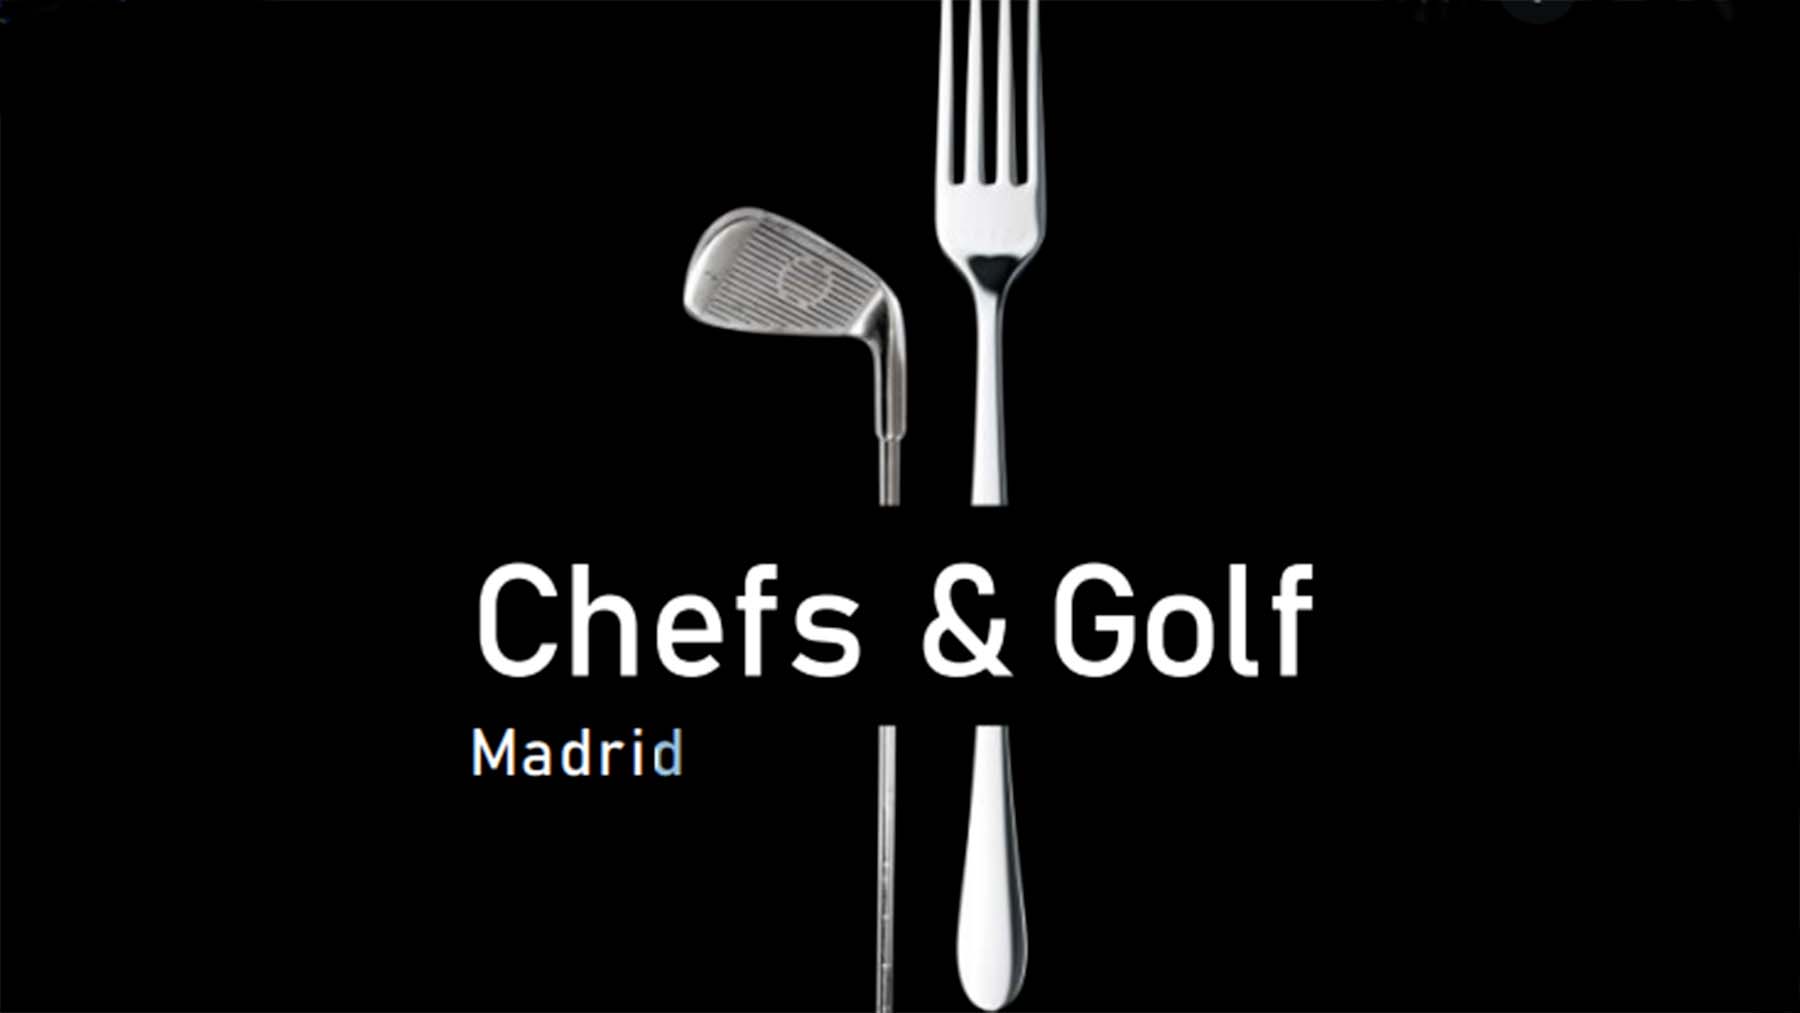 I edición del Chefs & Golf Madrid